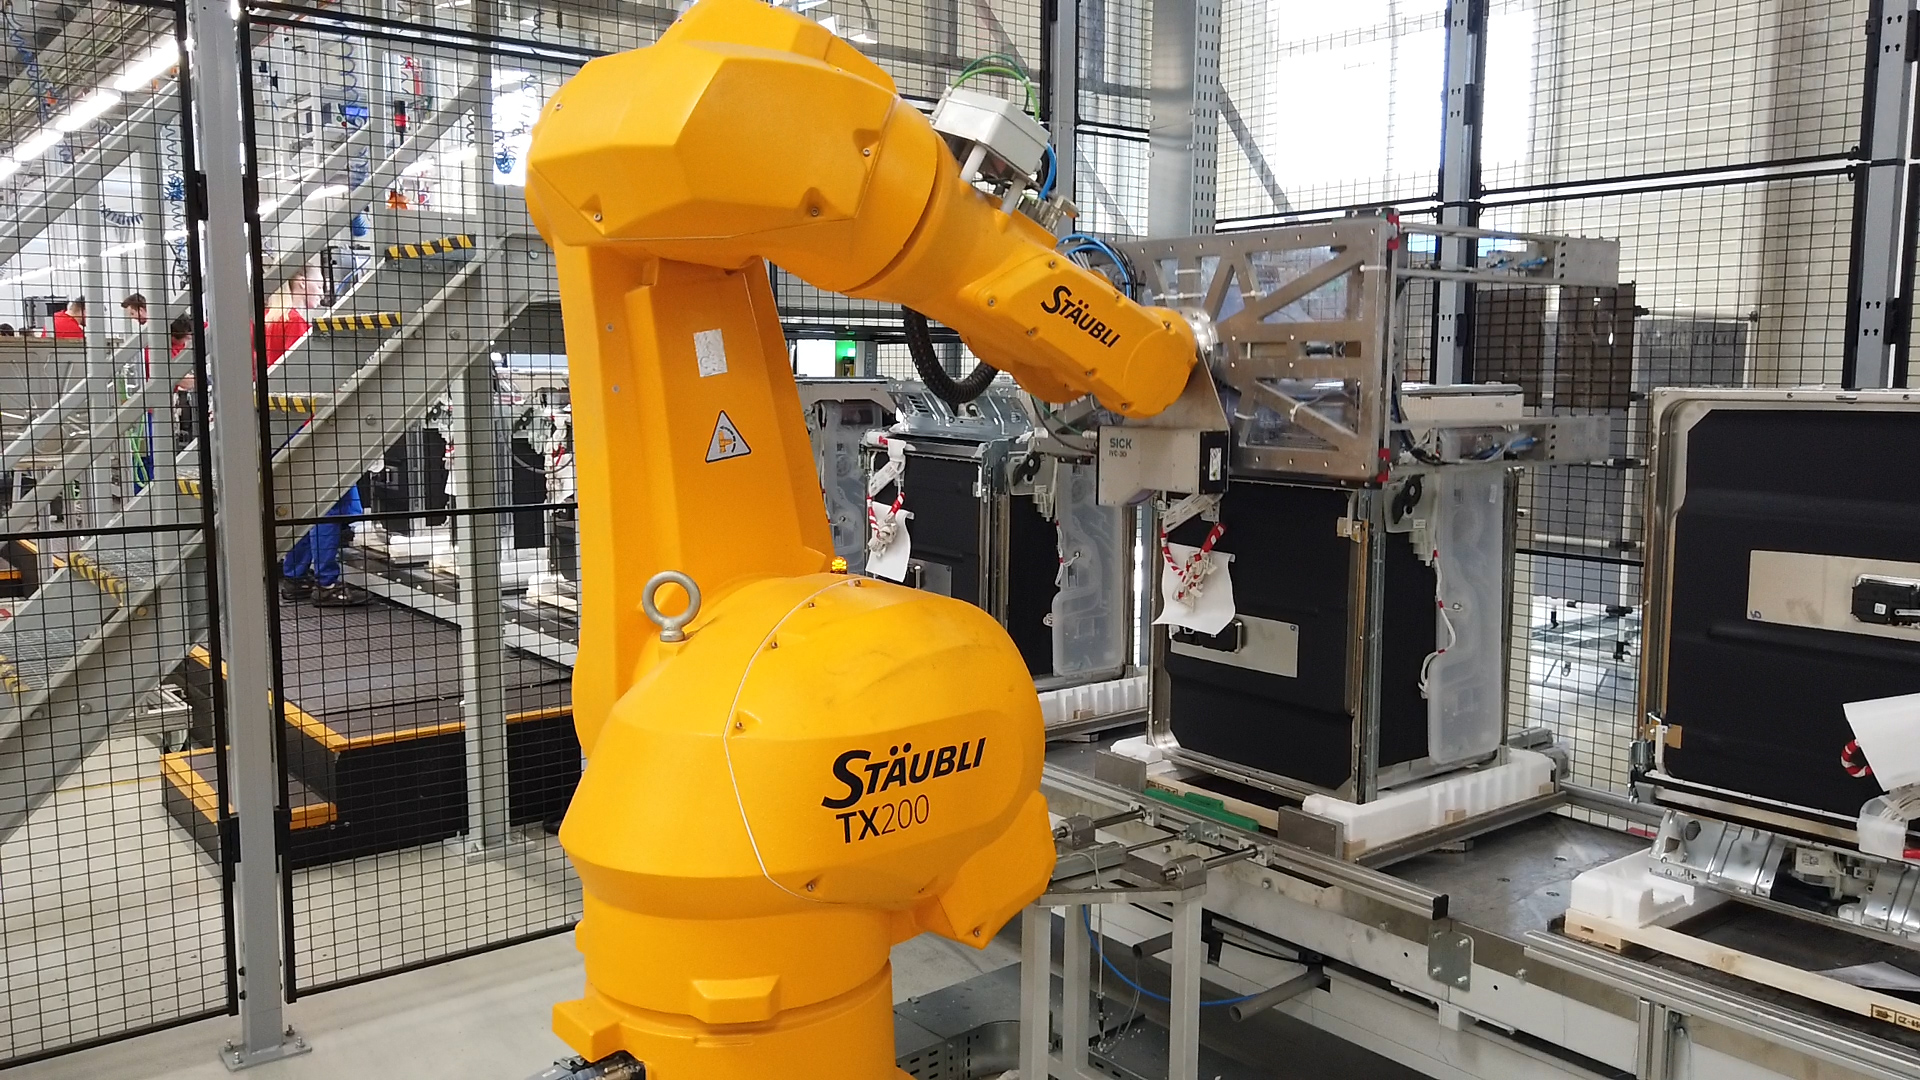 Robotizované pracoviště řeší složité, rychlé a přesné manipulace s jednotlivými výrobky